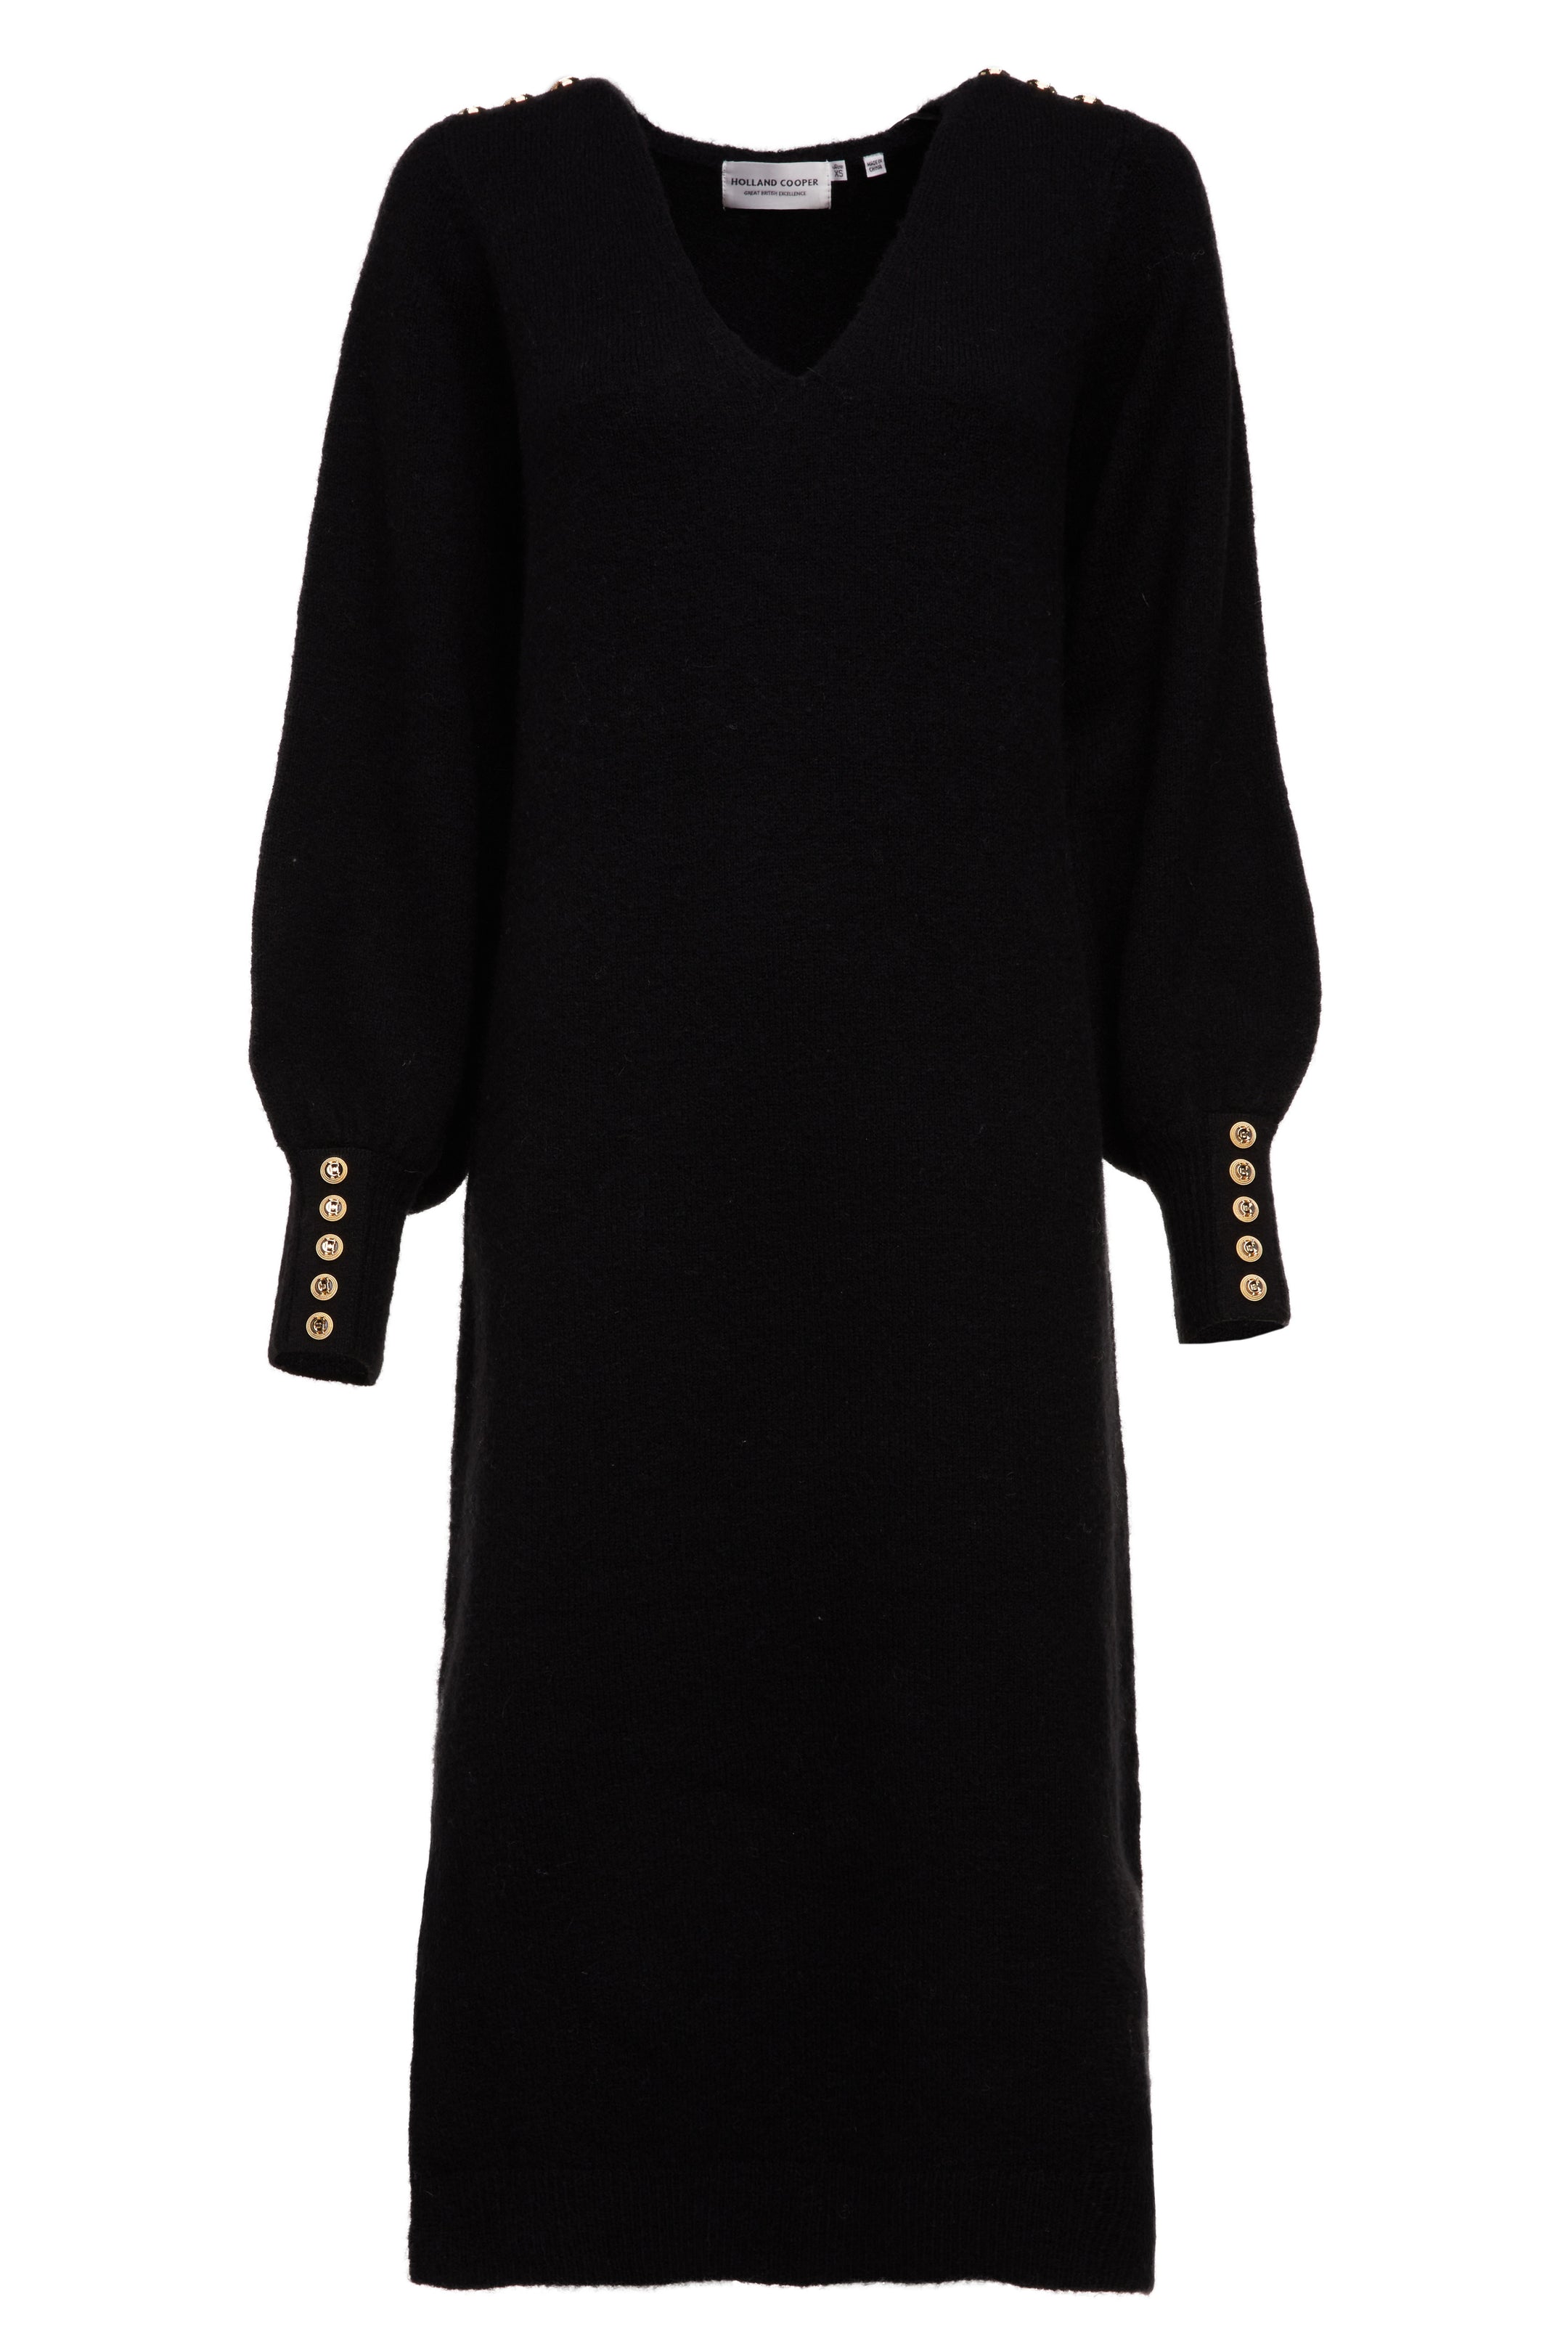 Berkeley V-Neck Dress (Black) – Holland Cooper